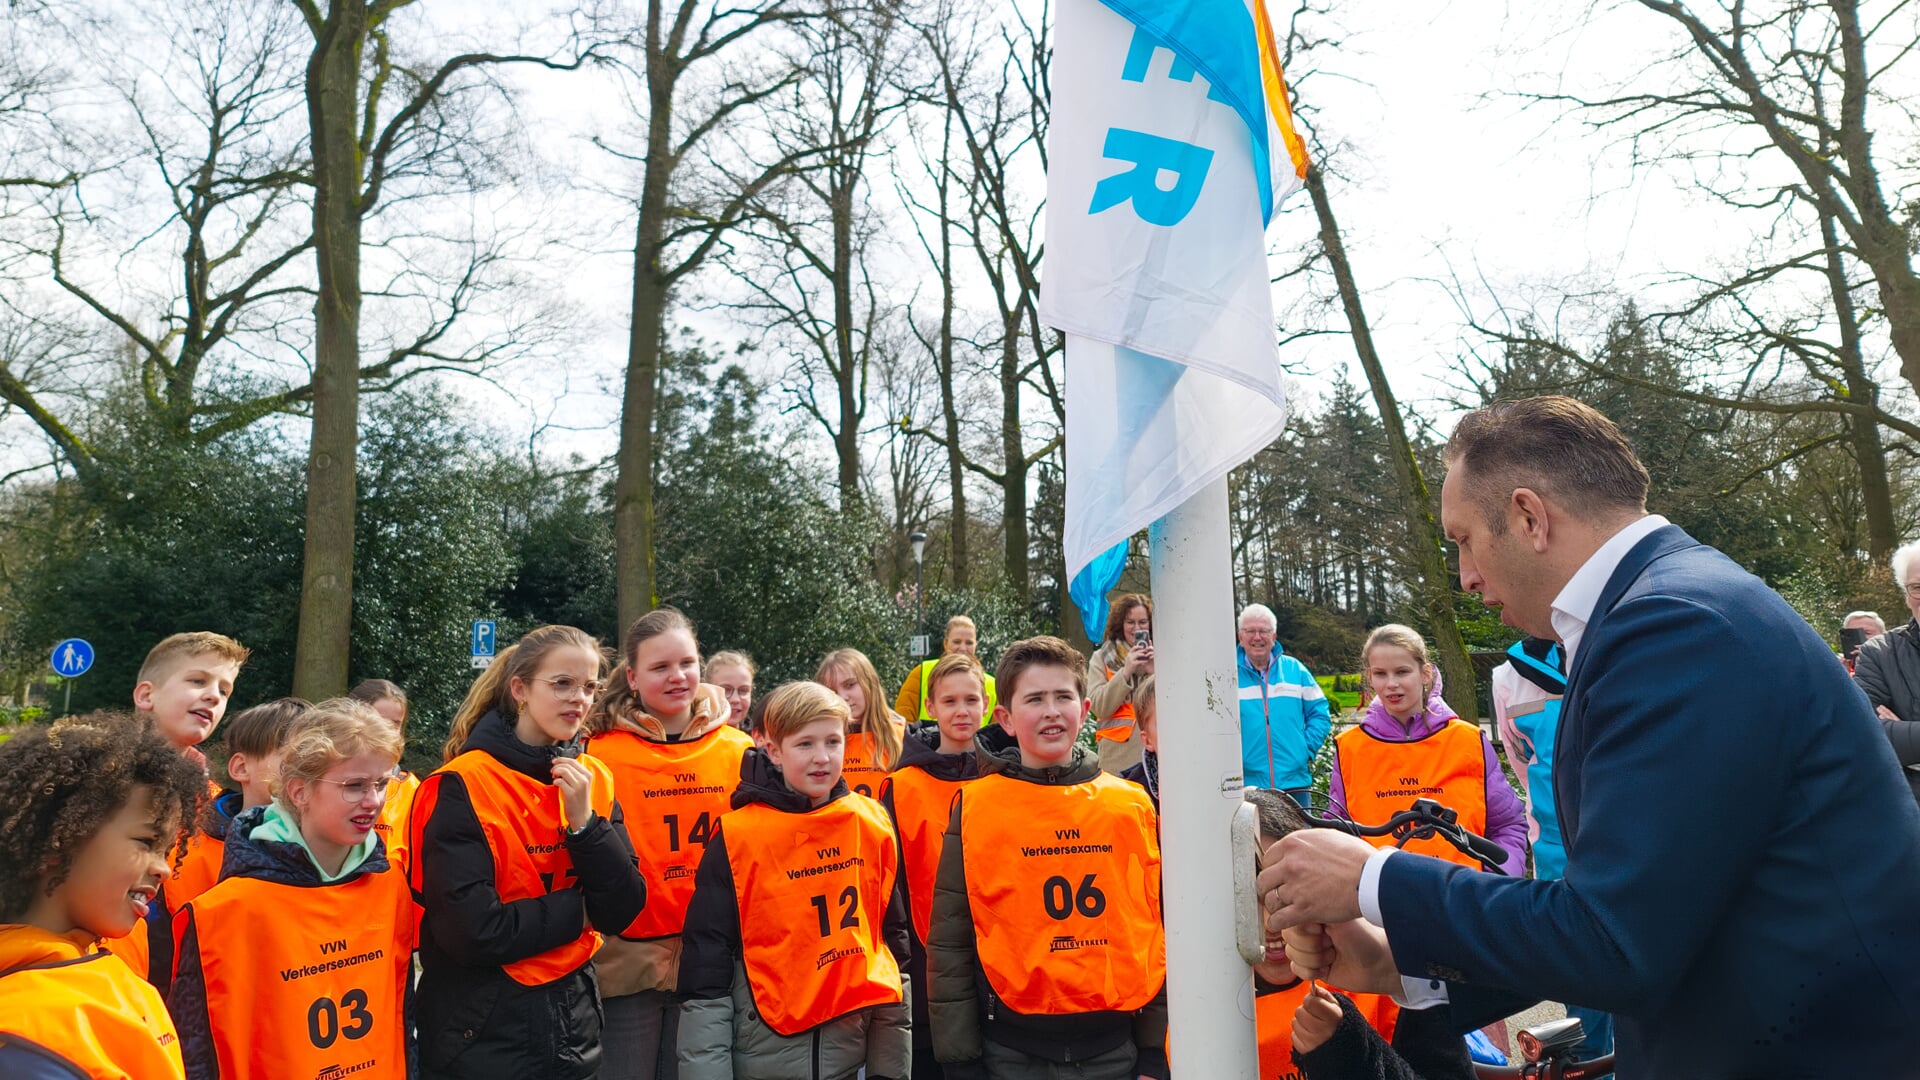 Met de hulp van een leerlinge hijst wethouder René de Koff de vlag als startsein voor het verkeersexamen van VVN Rijssen-Holten.